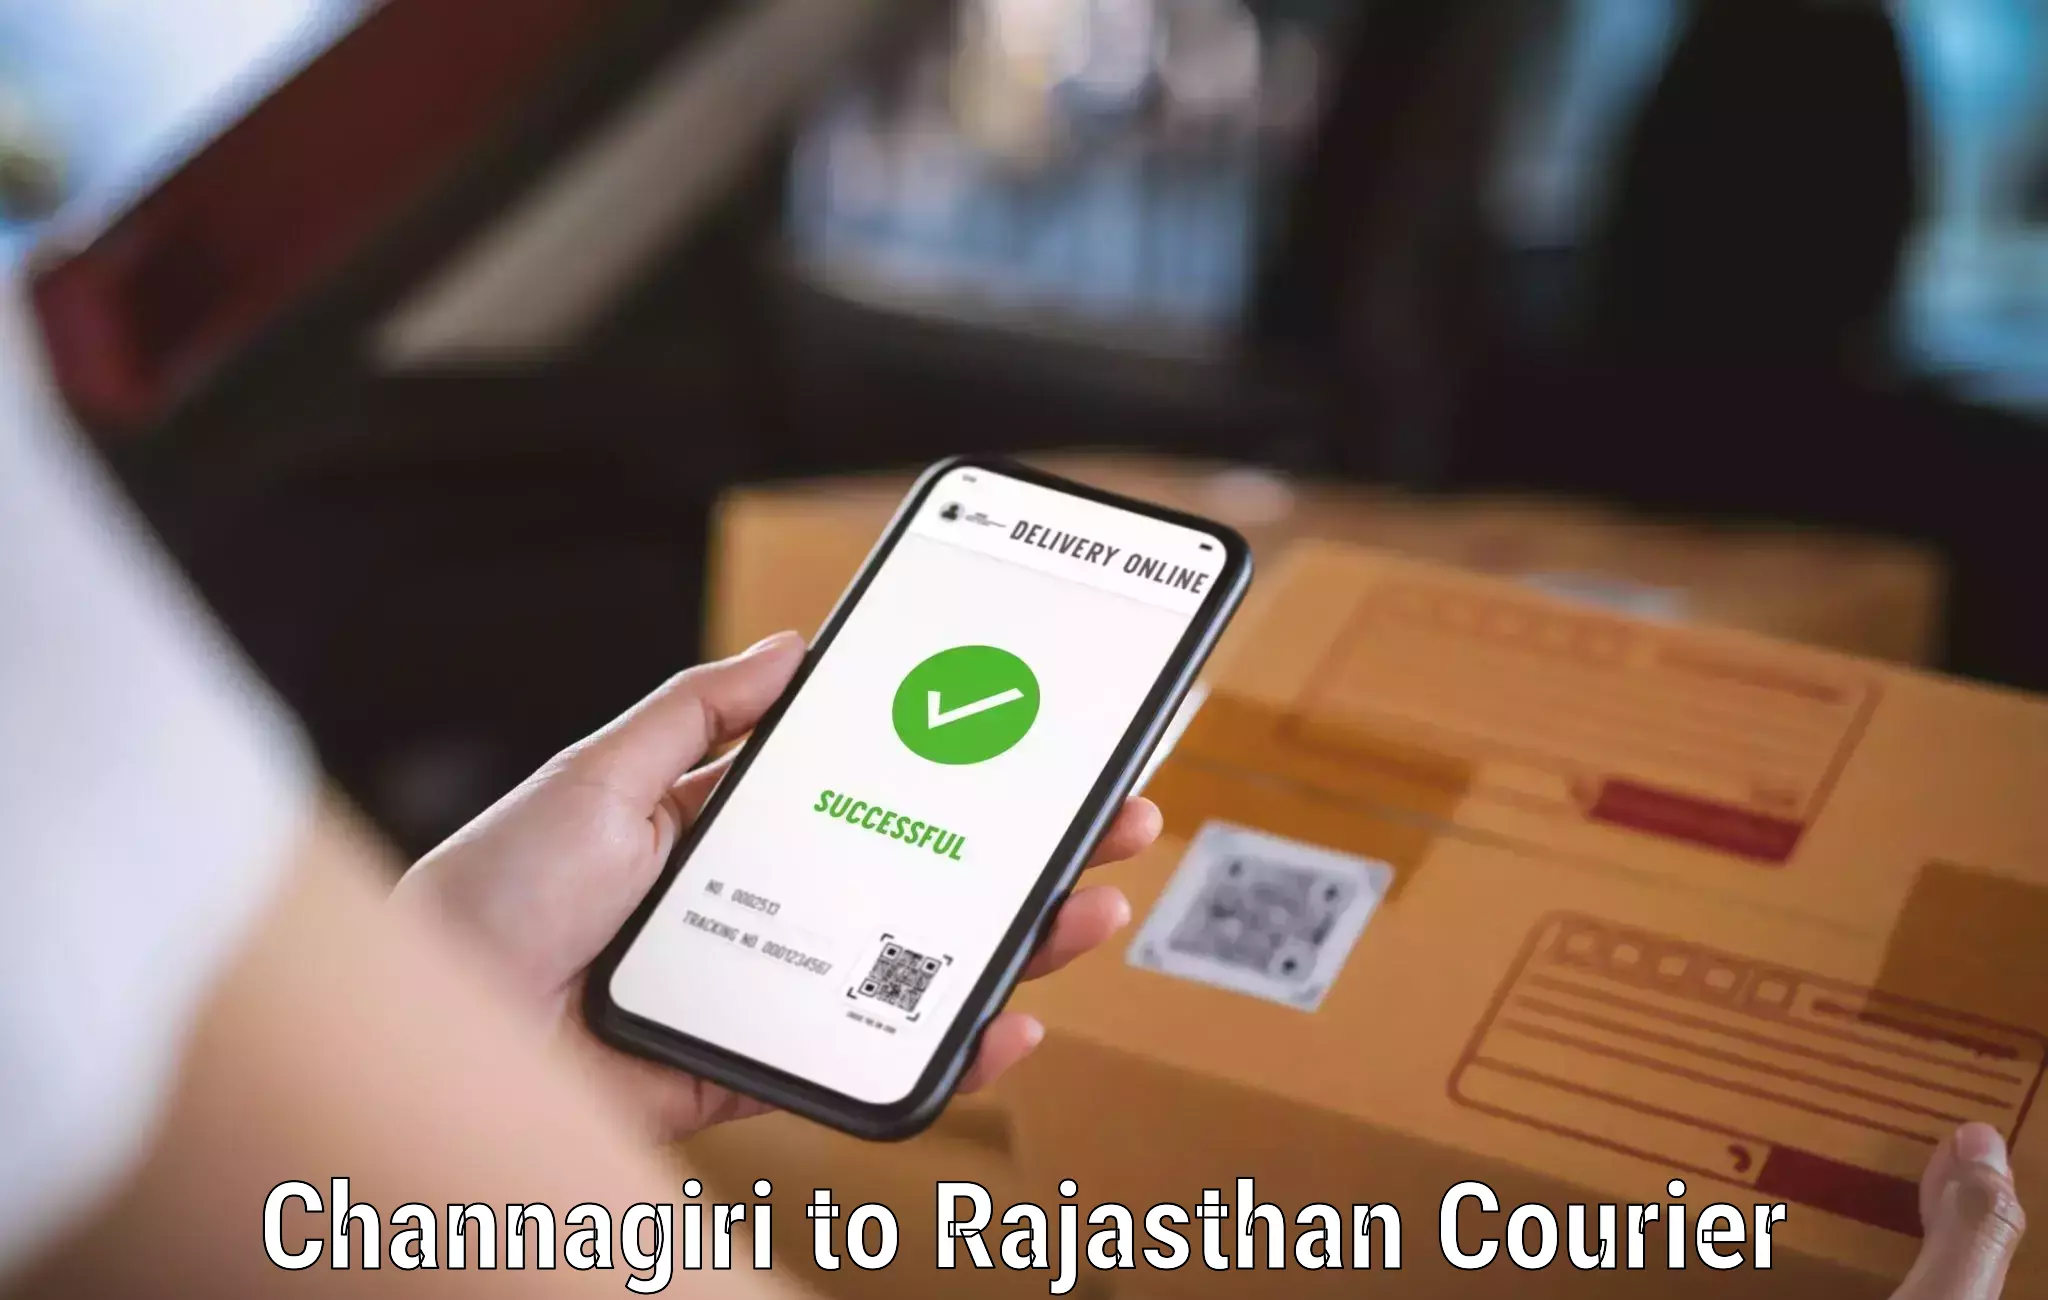 Urban courier service Channagiri to Kumbhalgarh